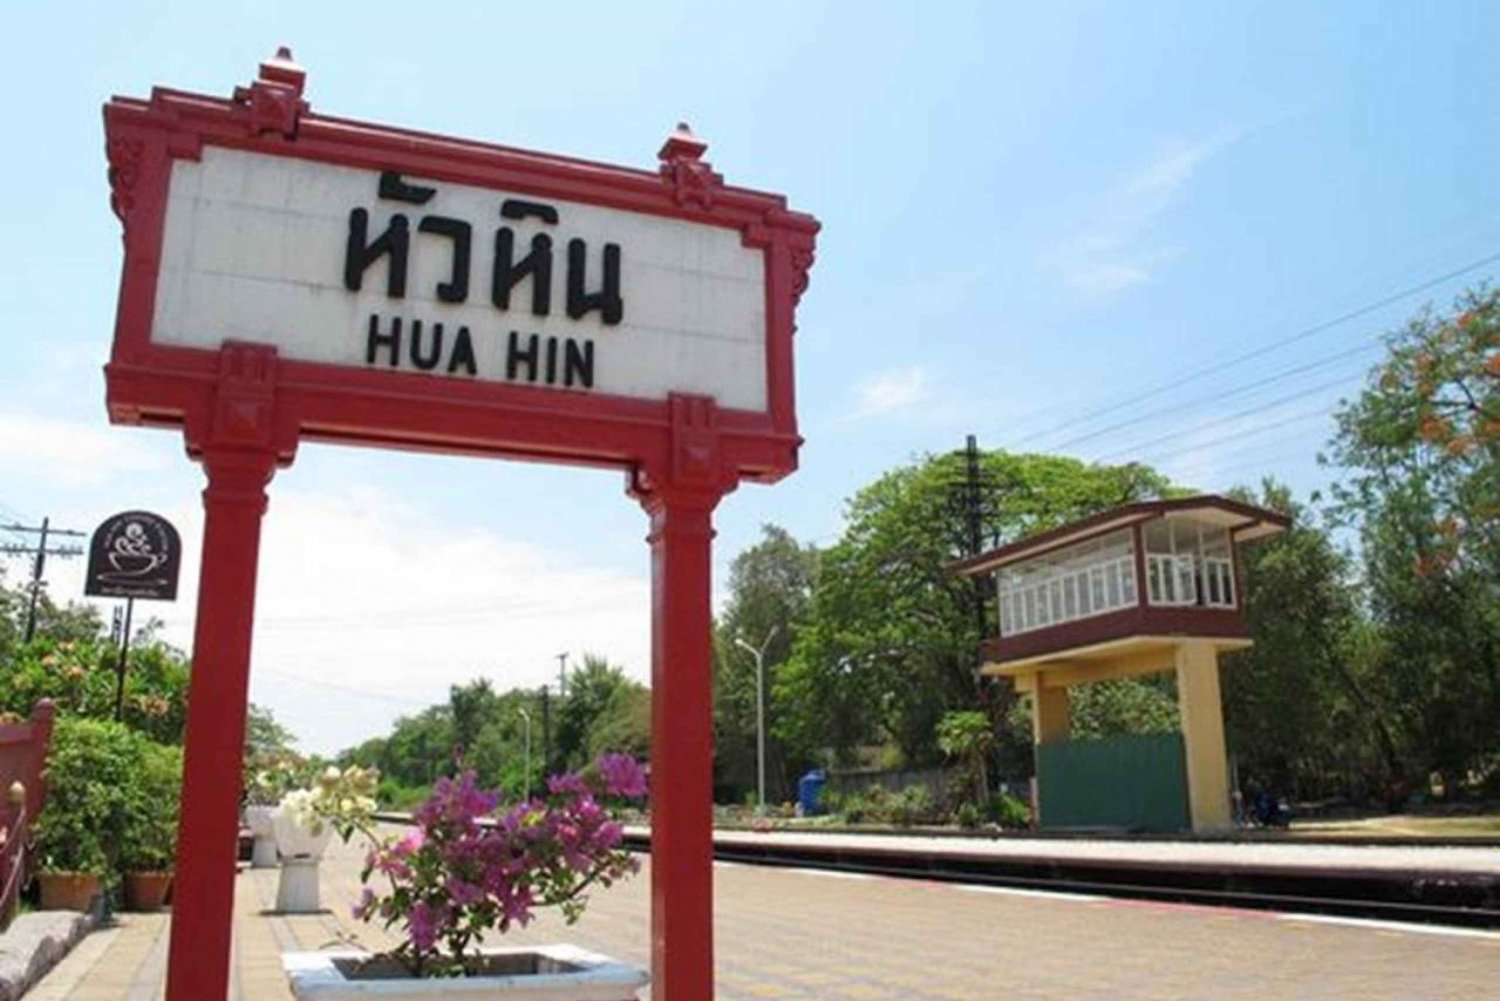 Aeroporto de Hua - Hin ou Suvarnabhumi: traslado de carro particular